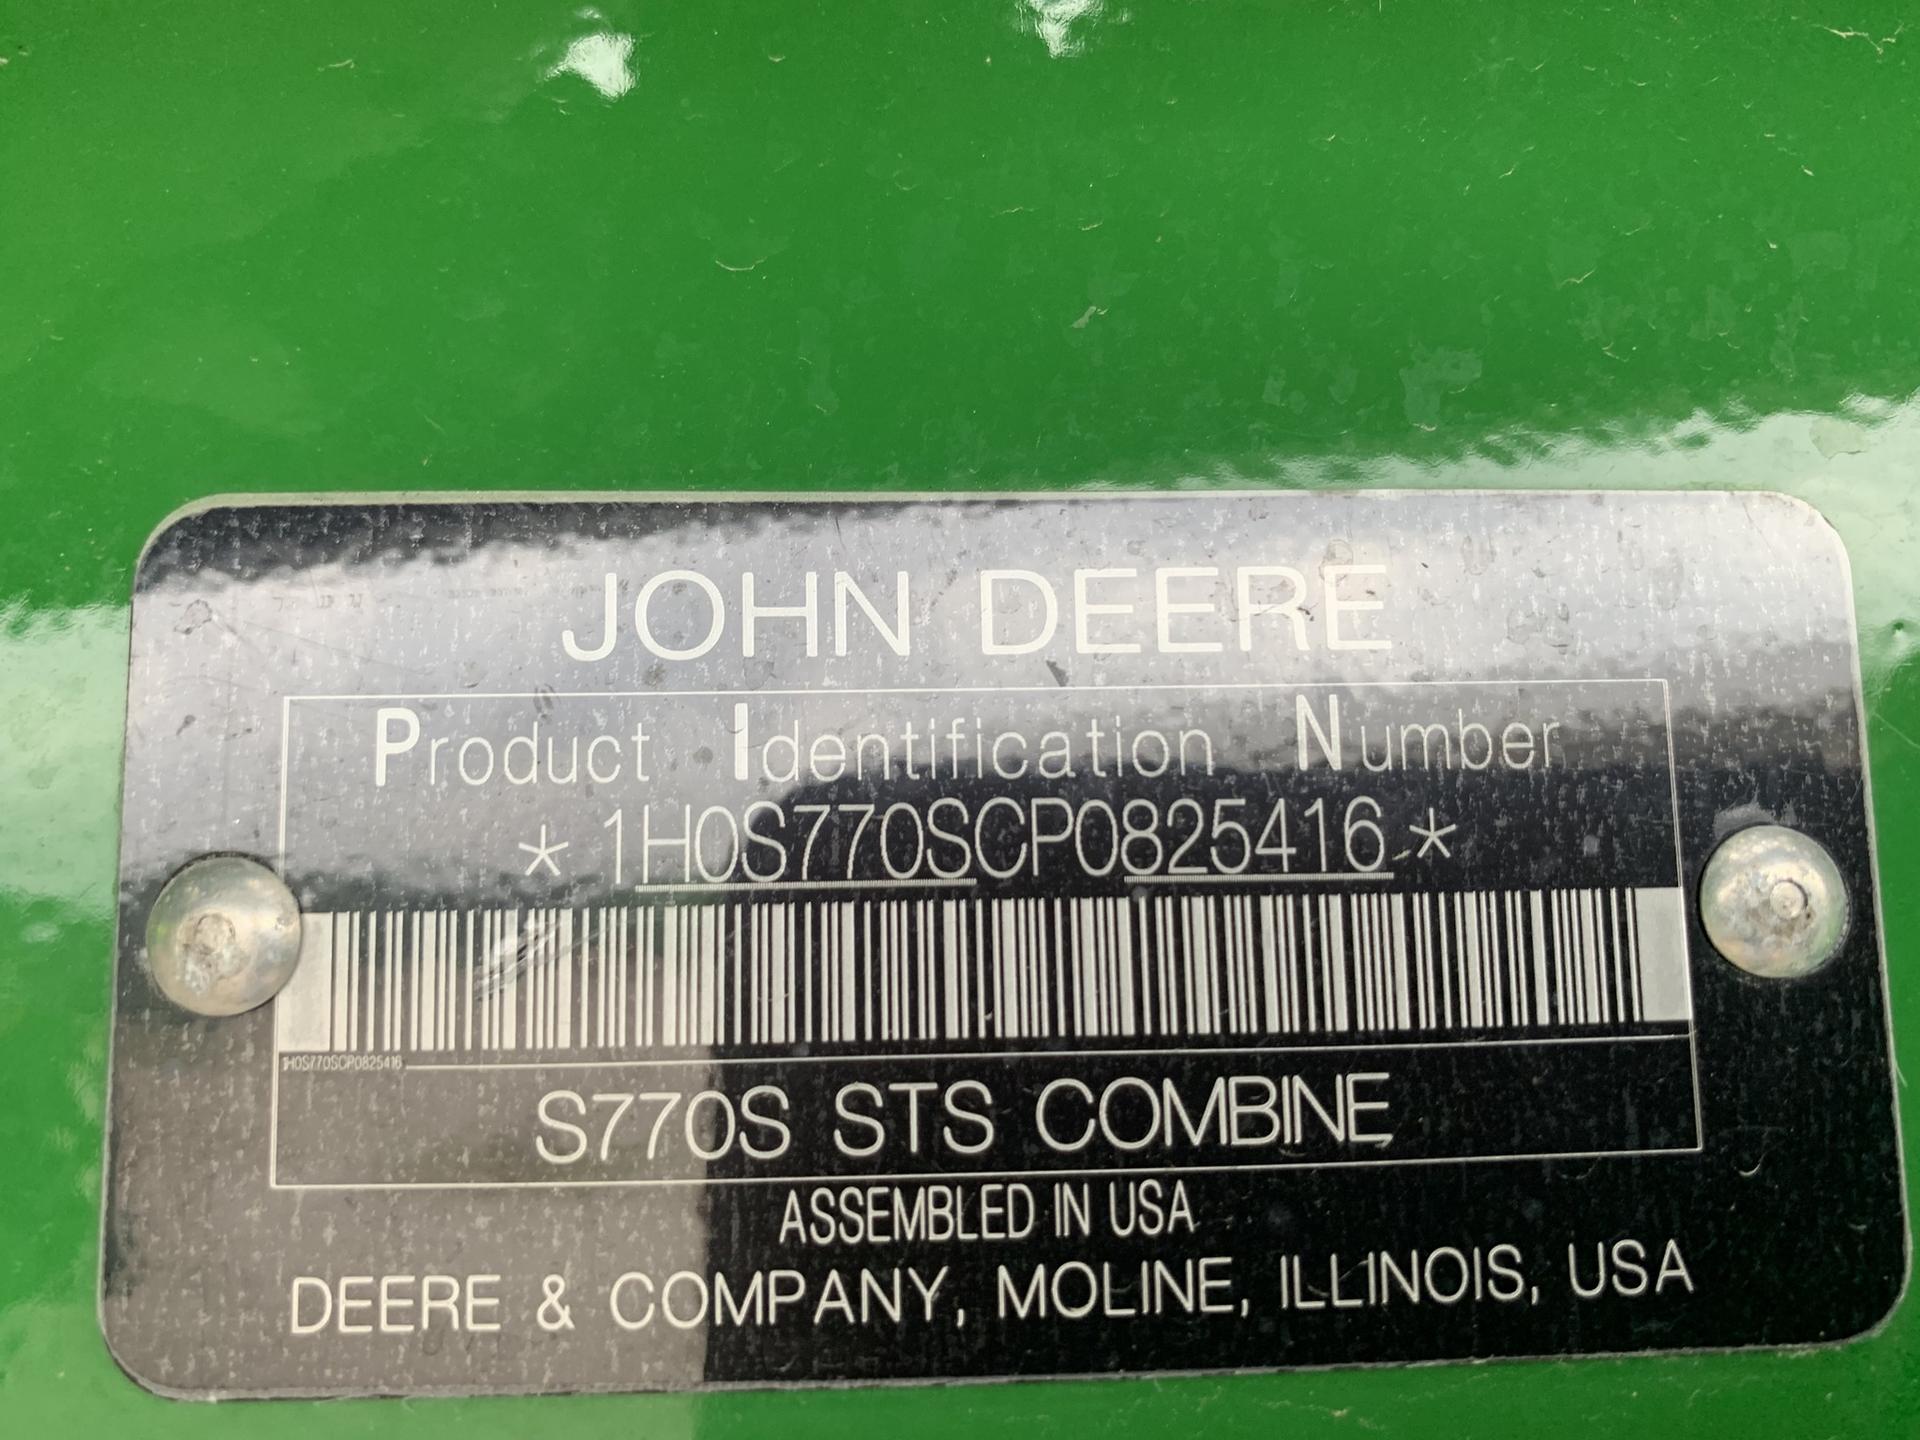 2023 John Deere S770